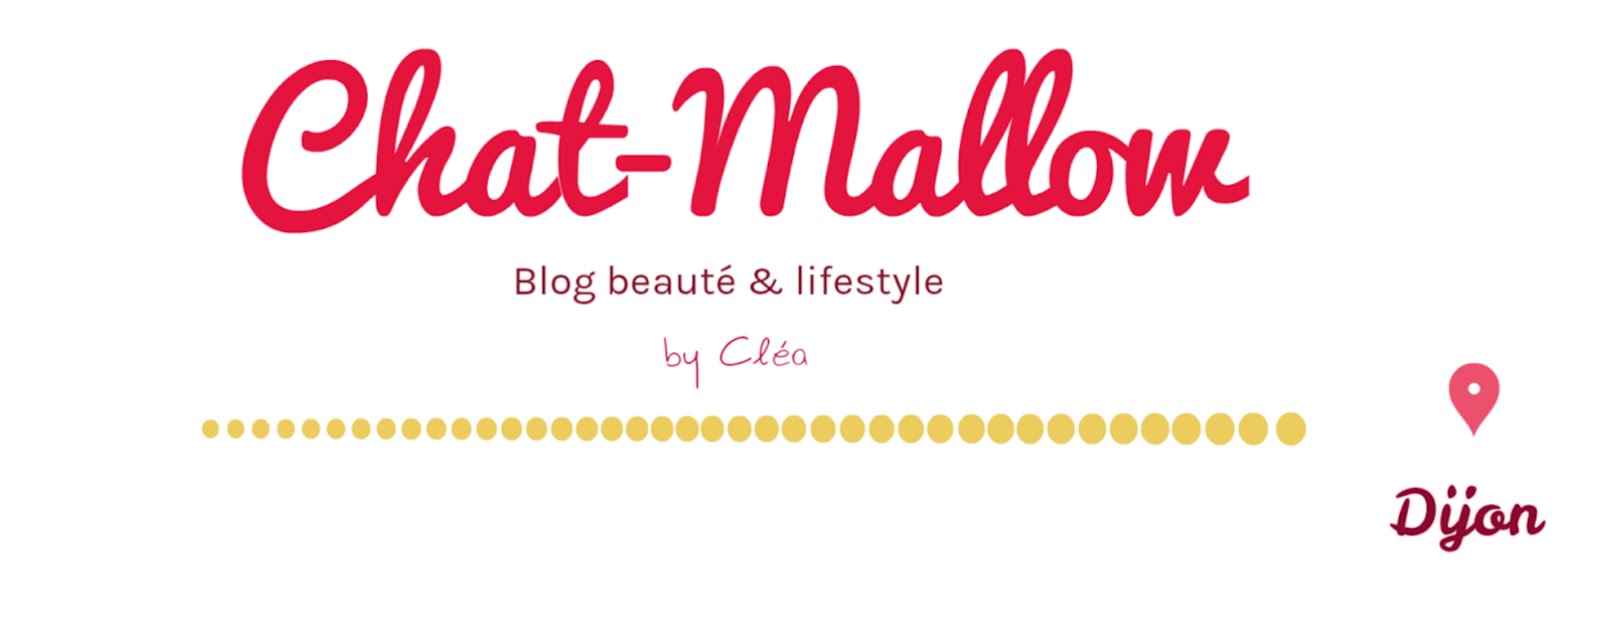 Chat-Mallow - Blog Lifestyle -  Dijon/Lyon